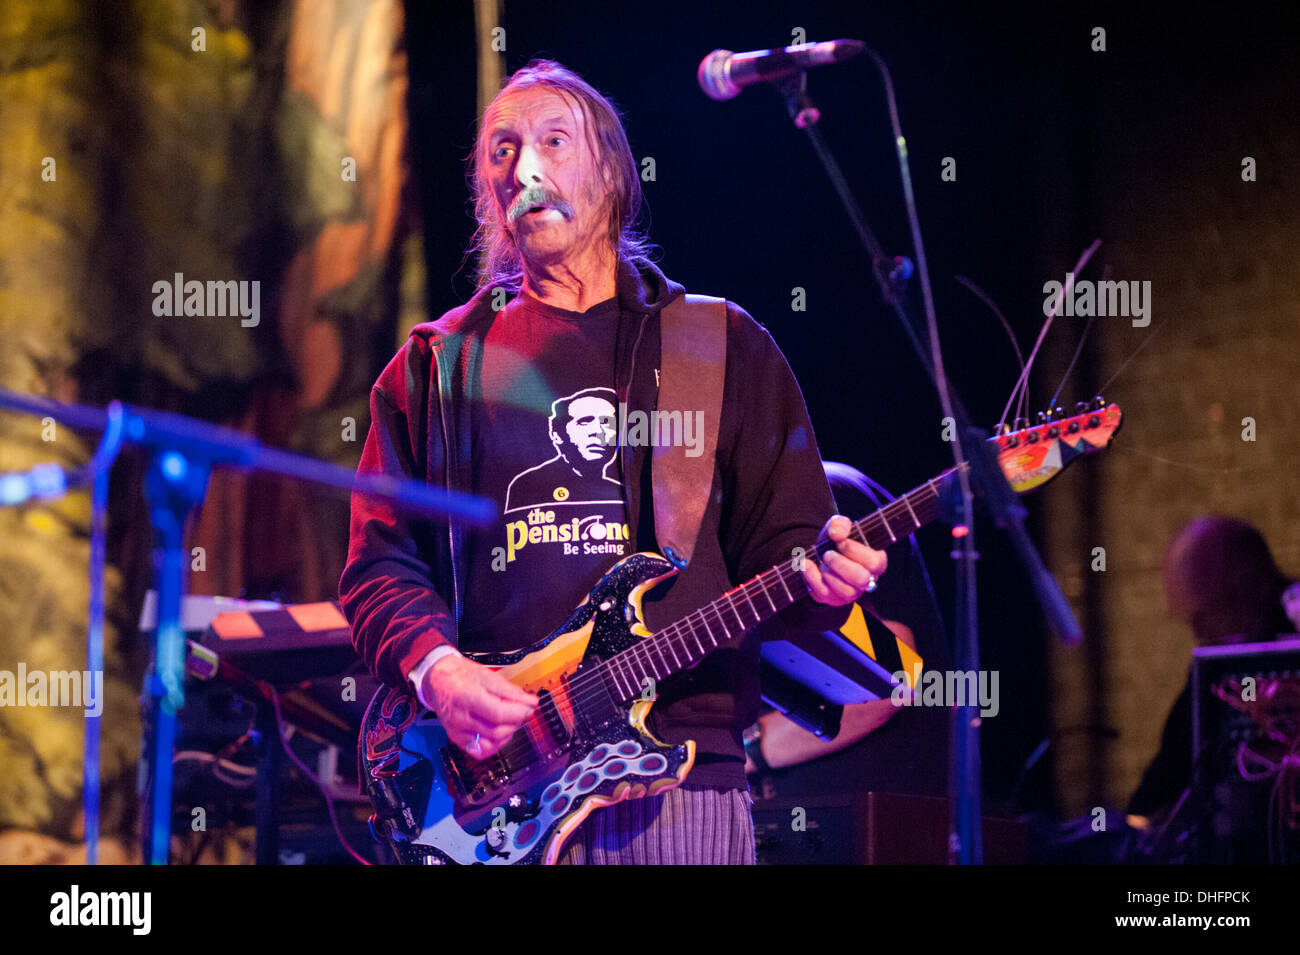 Space rock band Hawkwind in concerto a Wolverhampton Wulfrun Hall, Regno Unito, novembre 2013. Dave Brock chitarrista e membro fondatore. Foto Stock